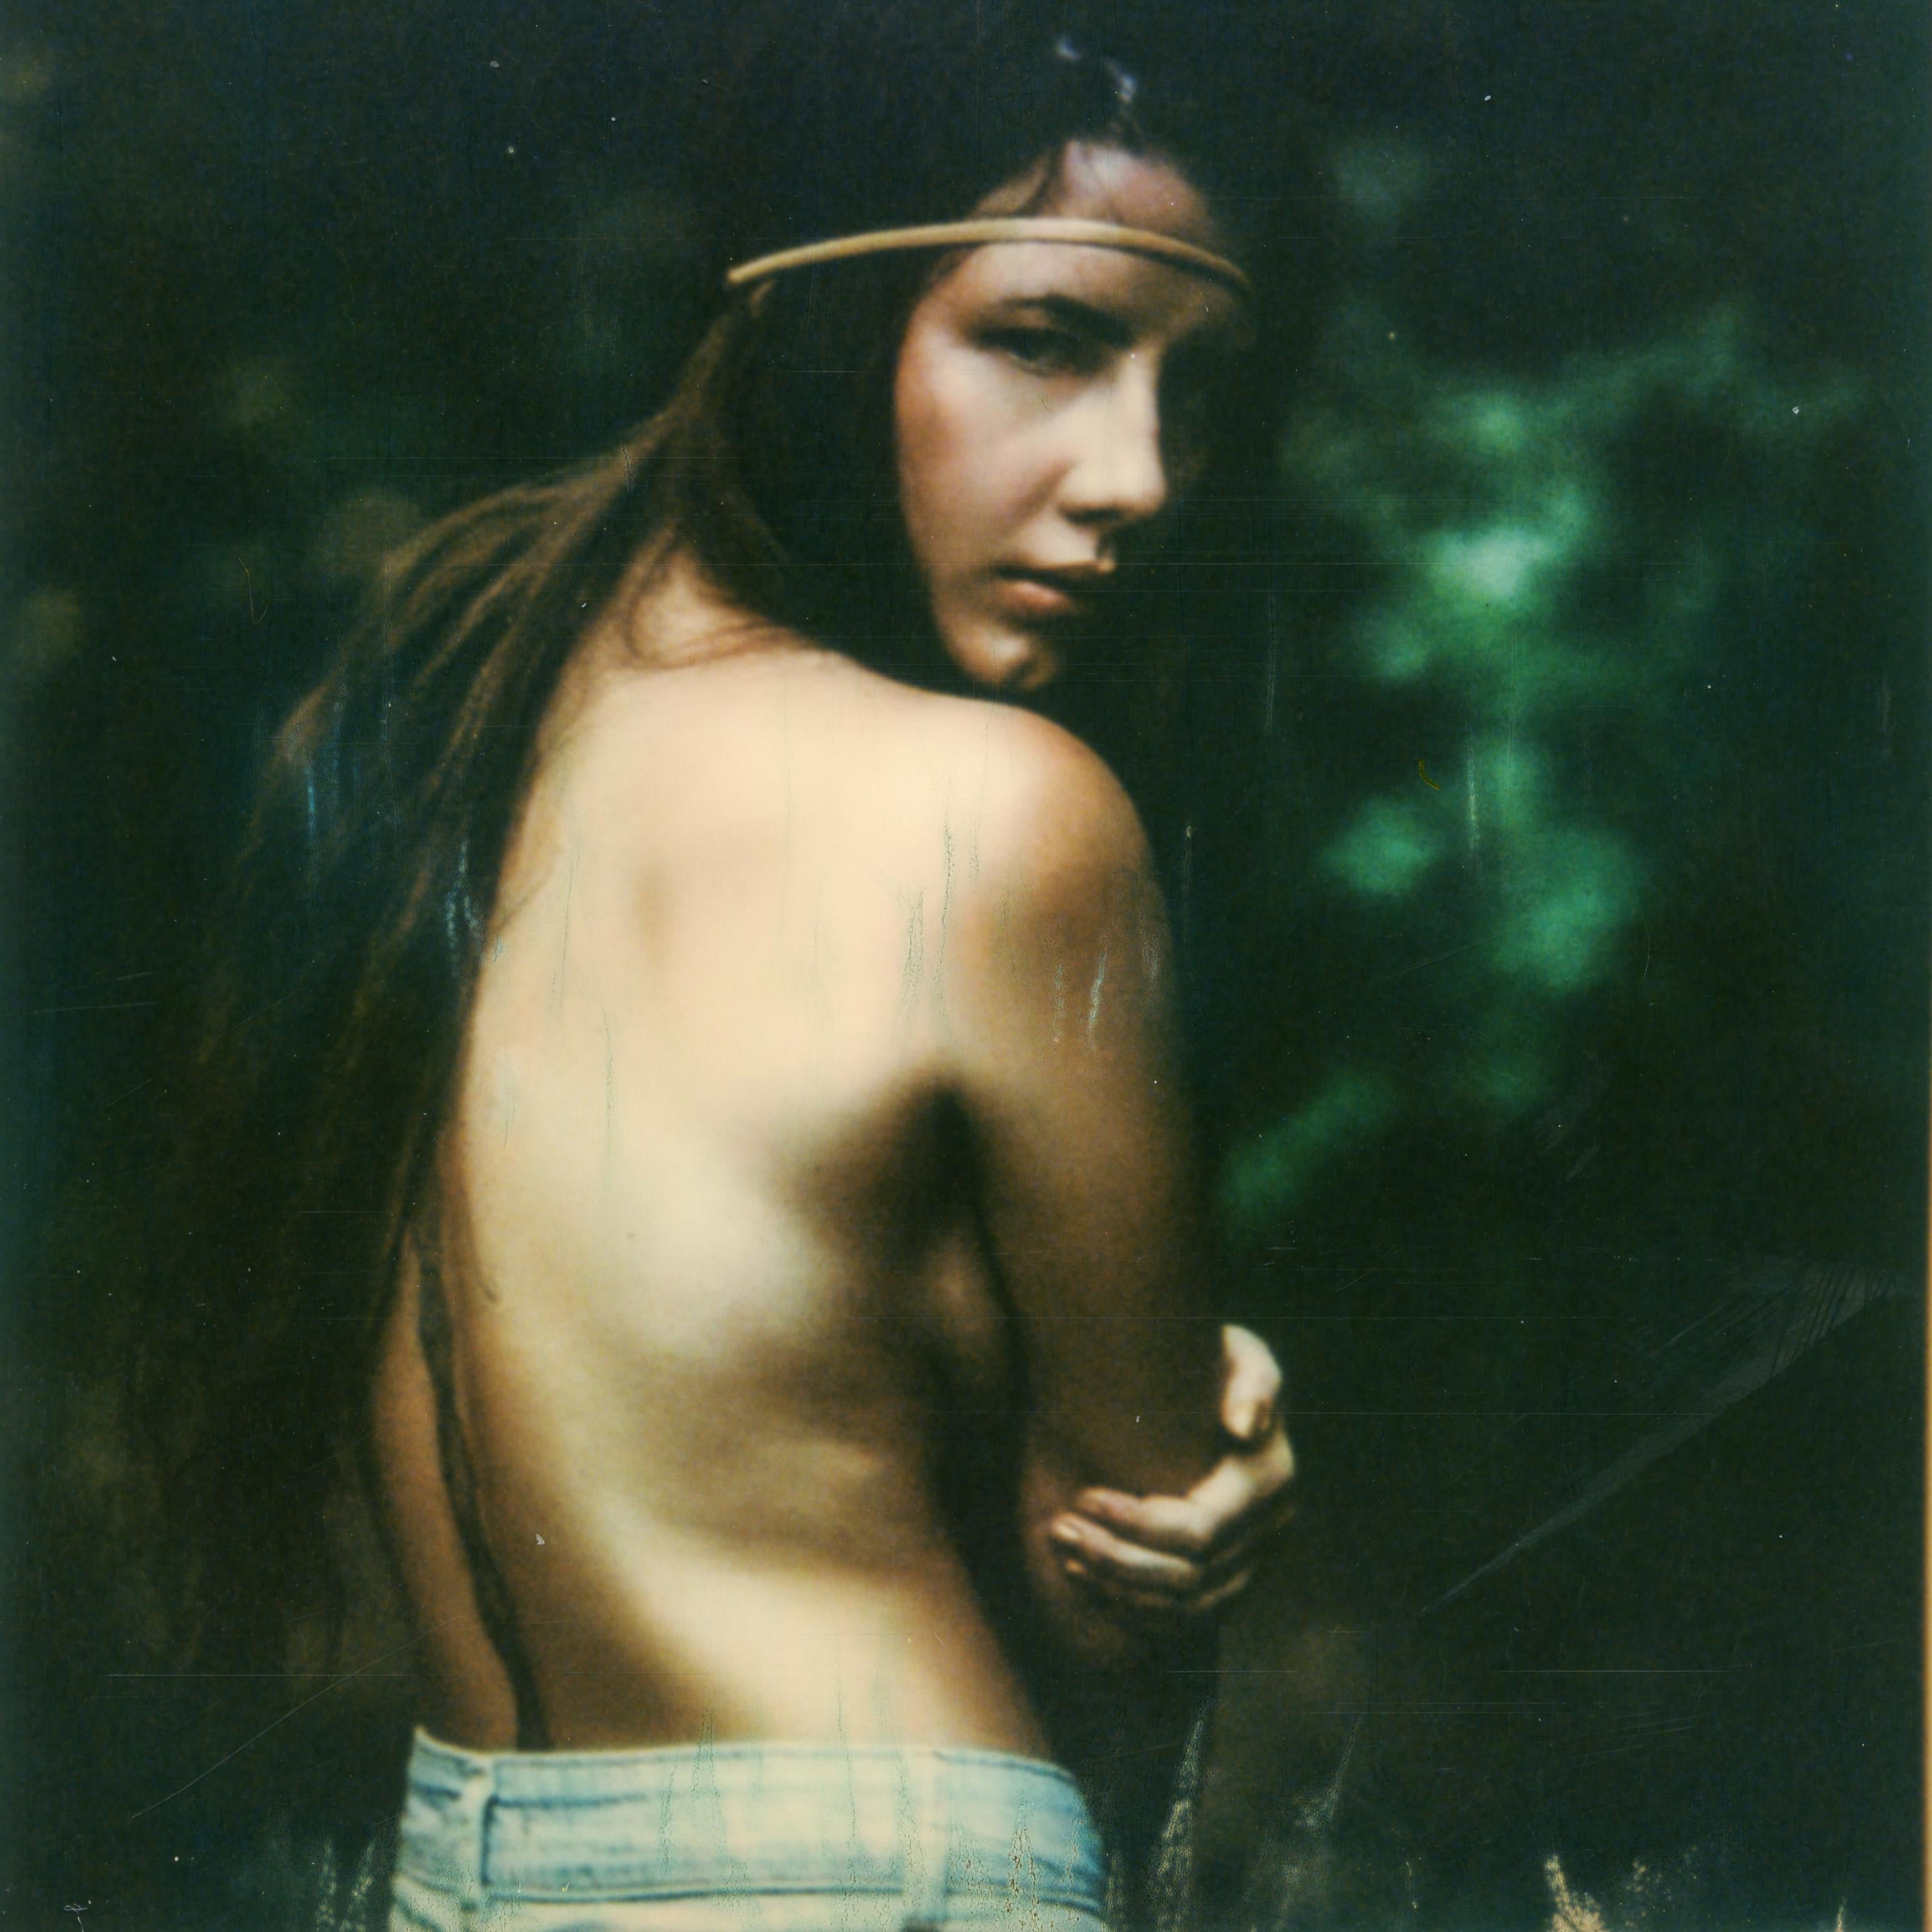 Wild Thing - Contemporary, Portrait, Women, Polaroid - Photograph by Kirsten Thys van den Audenaerde